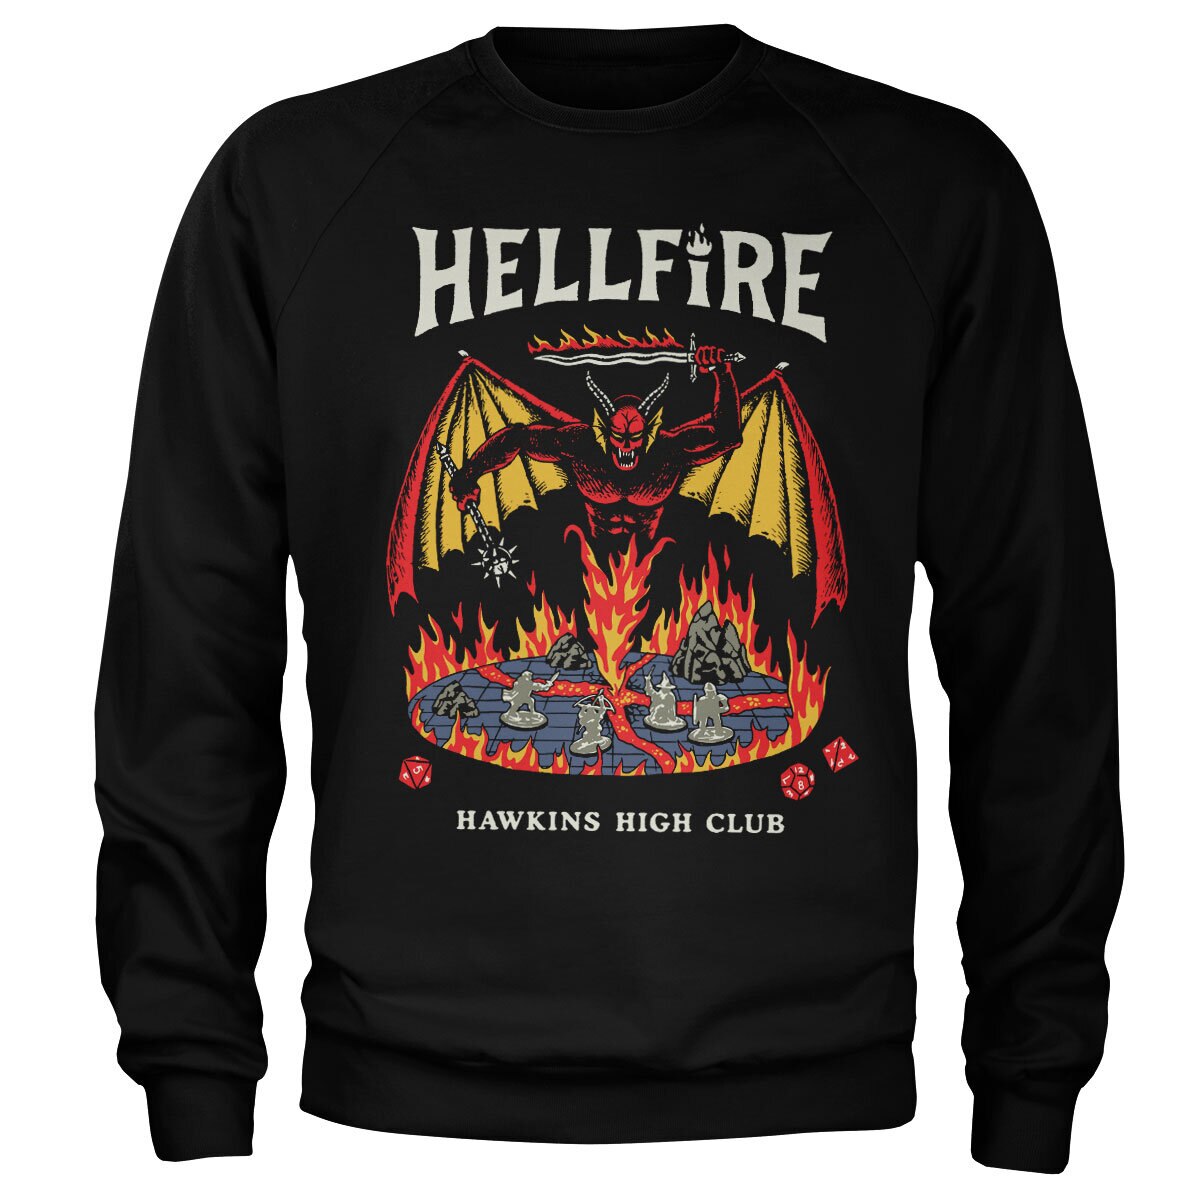 Hellfire Hawkins High Club Sweatshirt